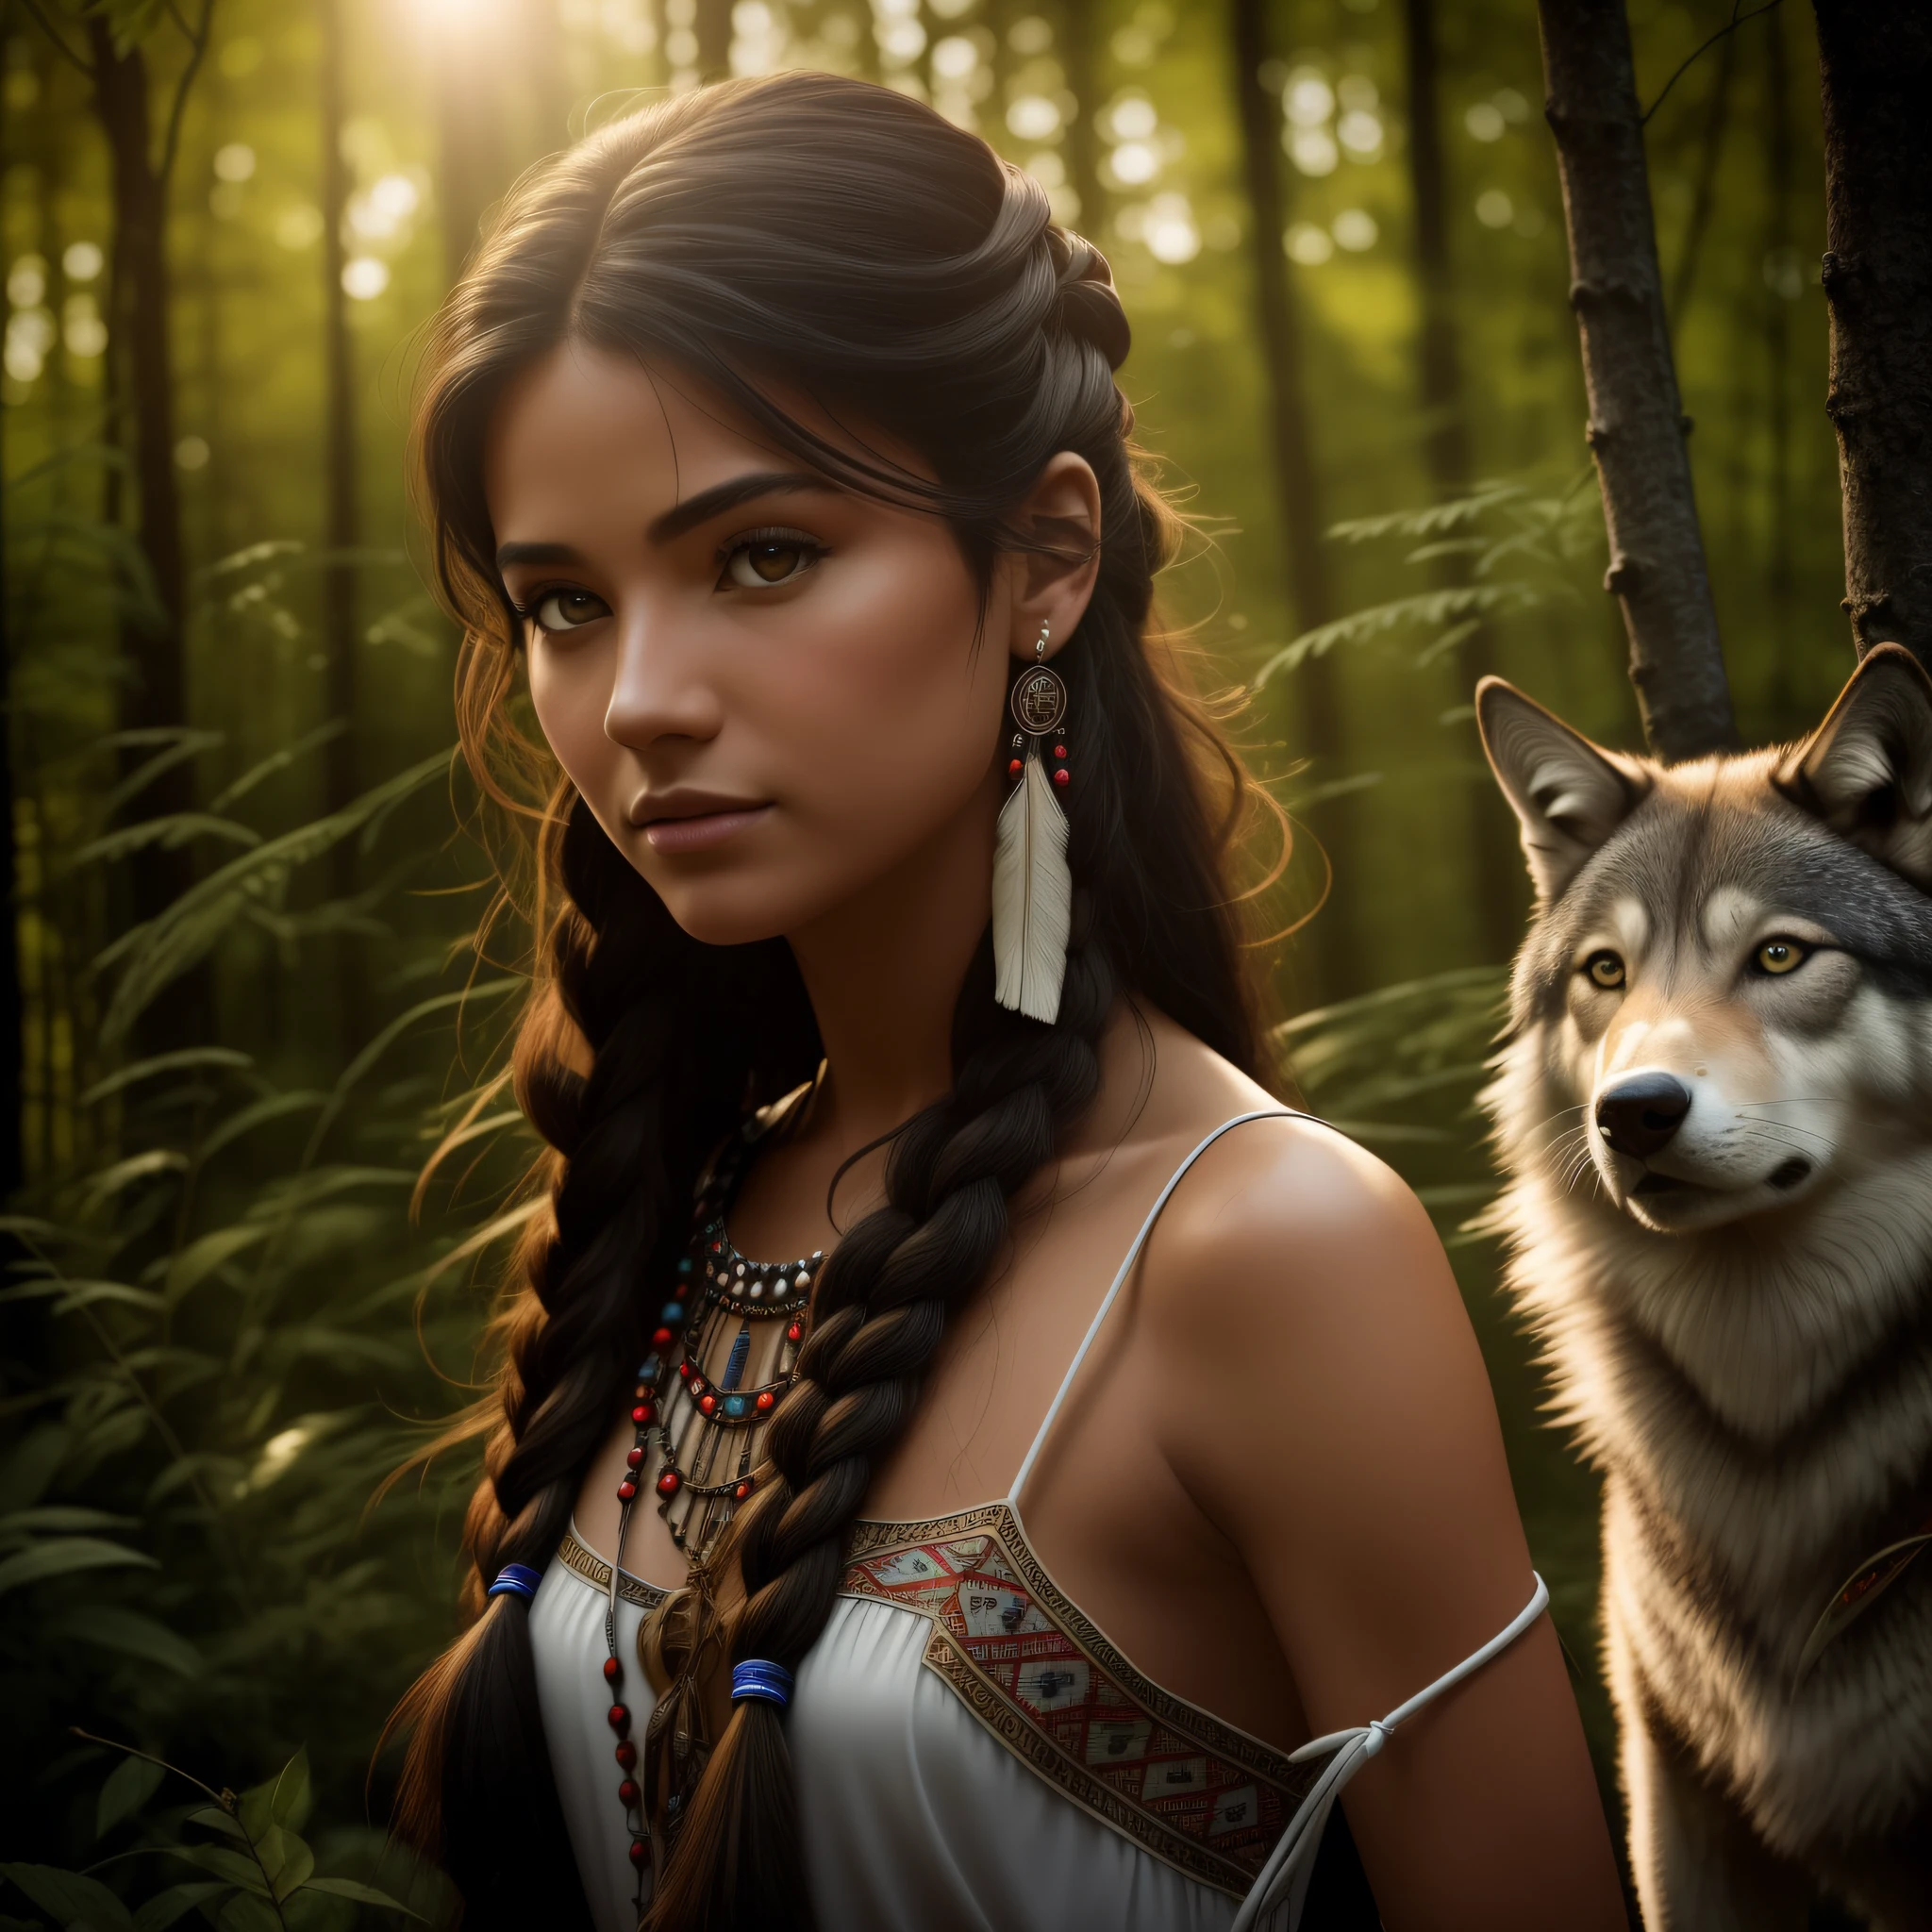 (Лучшее качество, шедевр: 1.1), (Реализм: 1.4),(шедевр, реалистичный: 1.4), (предельная точность: 1.2); (Передний: 1.3), реалистичный portrait of a Native American girl with indigenous adornments with her ultra реалистичный pet wolf in the forest, Племенное платье, очень длинные волосы, голые плечи, ночное небо, Свечение галактики, Океан, вода, наклон головы, ветер, облака, Естественный свет, Открытый, Один, ПЕРЕРЫВ, кинематографический свет, сверхвысокое разрешение, 8к ухд, Пленочные бусины,  идеальная анатомия, Delicate and нежный skin, Лучшие тени, нежный, СЫРОЙ, высокое разрешение, охотница, ночь, яркость полной луны.